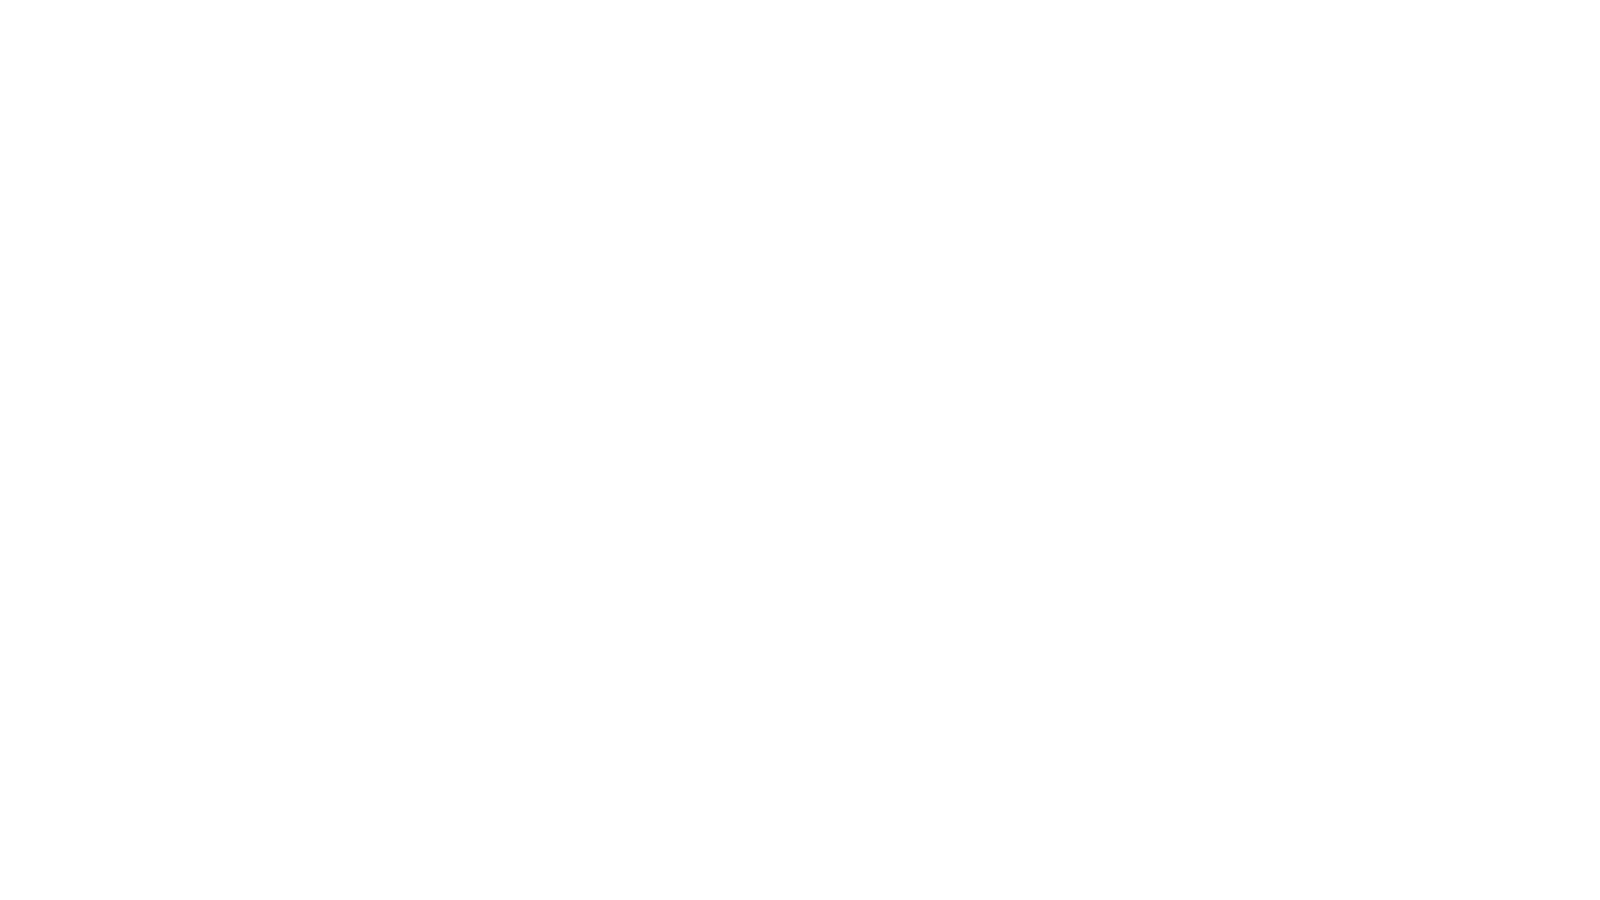 Intervenant<br />Michel Marcelin, Directeur de recherche émérite du CNRS au Laboratoire d’Astrophysique de Marseille, membre de l’Académie des Sciences, Lettres et Arts de Marseille.<br /><br />Résumé<br />L’astronomie dans notre région a débuté 300 ans avant JC, avec Pythéas et la mesure de la latitude de Marseille, mais les premières observations remarquables ont été faites en 1636 par Peiresc et Gassendi, à la Ste Victoire, avec les premières cartes de la Lune. L’Observatoire des Accoules, créé en 1702 à Marseille, a permis de nombreuses découvertes, notamment de comètes et d’astéroïdes. Les observations se sont poursuivies au plateau Longchamp en 1864, avec le télescope de Foucault de 80 cm qui a permis d’observer des objets peu lumineux tels que les nébuleuses. Les capacités d’observation  se sont accrues avec la création de l’observatoire de Haute Provence en 1937, on y a installé de nombreux télescopes, dont le télescope de 1,93 m (en 1957) qui a permis la découverte de la première exoplanète en 1995. Mais il ne faut pas oublier l’astronomie spatiale, avec la création du LAS (Laboratoire d’Astronomie Spatiale) par Georges Courtès, en 1965. Ce laboratoire a grandement contribué aux débuts de l’astronomie spatiale française et a participé à de nombreuses missions spatiales embarquées sur des satellites ou des stations orbitales, en collaboration avec les soviétiques aussi bien qu’avec les américains. En 2000, le LAS a fusionné avec l’Observatoire pour donner le LAM (Laboratoire d’Astrophysique de Marseille) qui est installé au Technopôle de Château Gombert, il est impliqué dans de nombreux projets internationaux, au sol et dans l’espace.